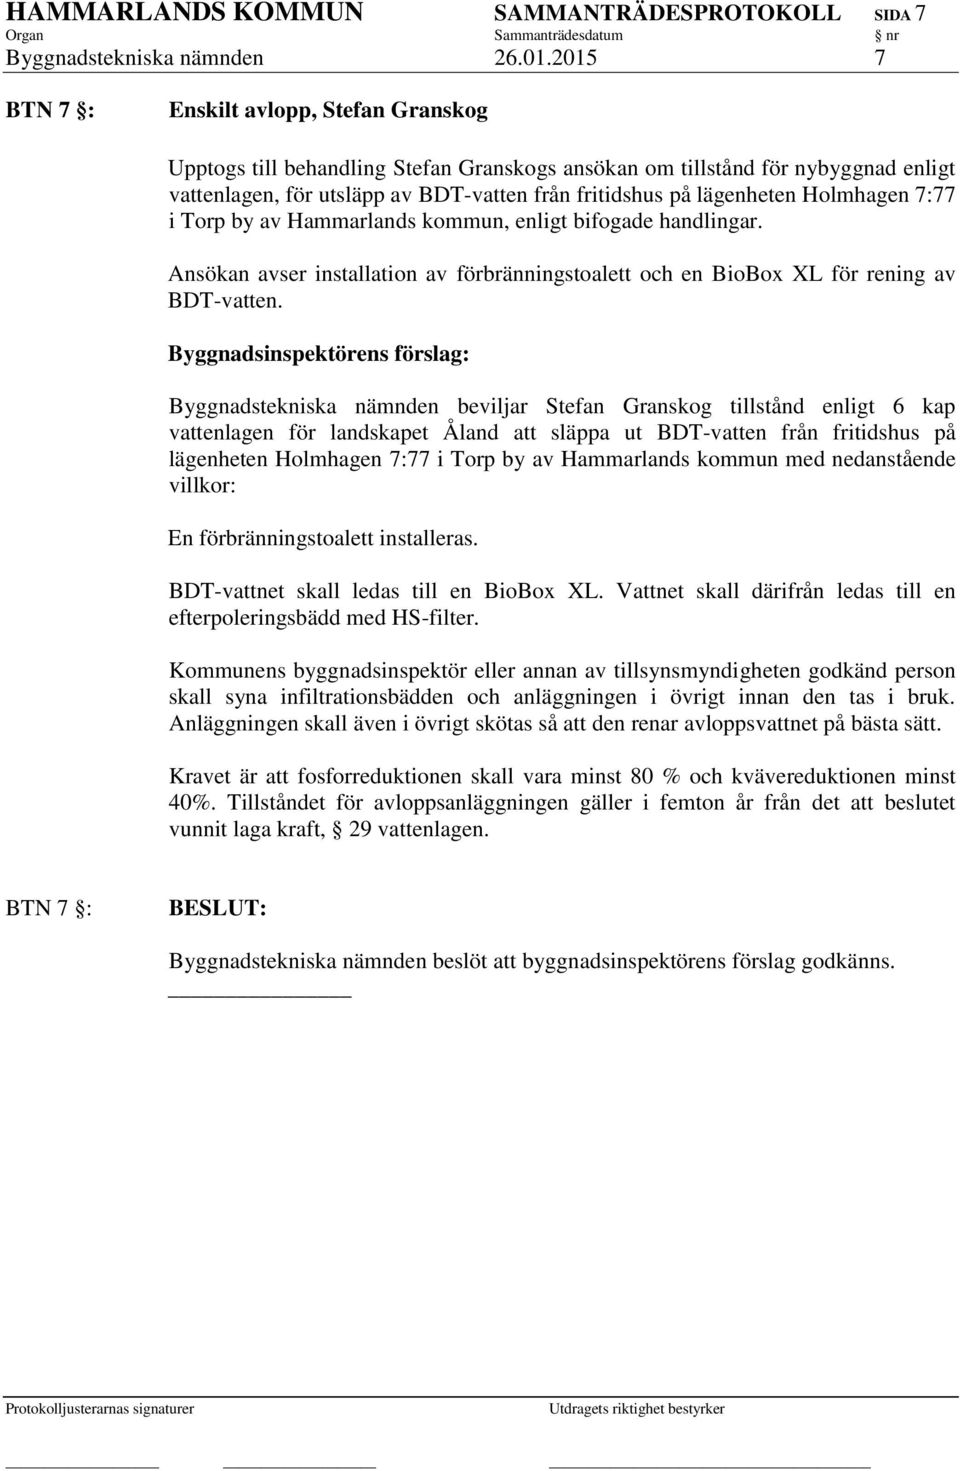 Holmhagen 7:77 i Torp by av Hammarlands kommun, enligt bifogade handlingar. Ansökan avser installation av förbränningstoalett och en BioBox XL för rening av BDT-vatten.